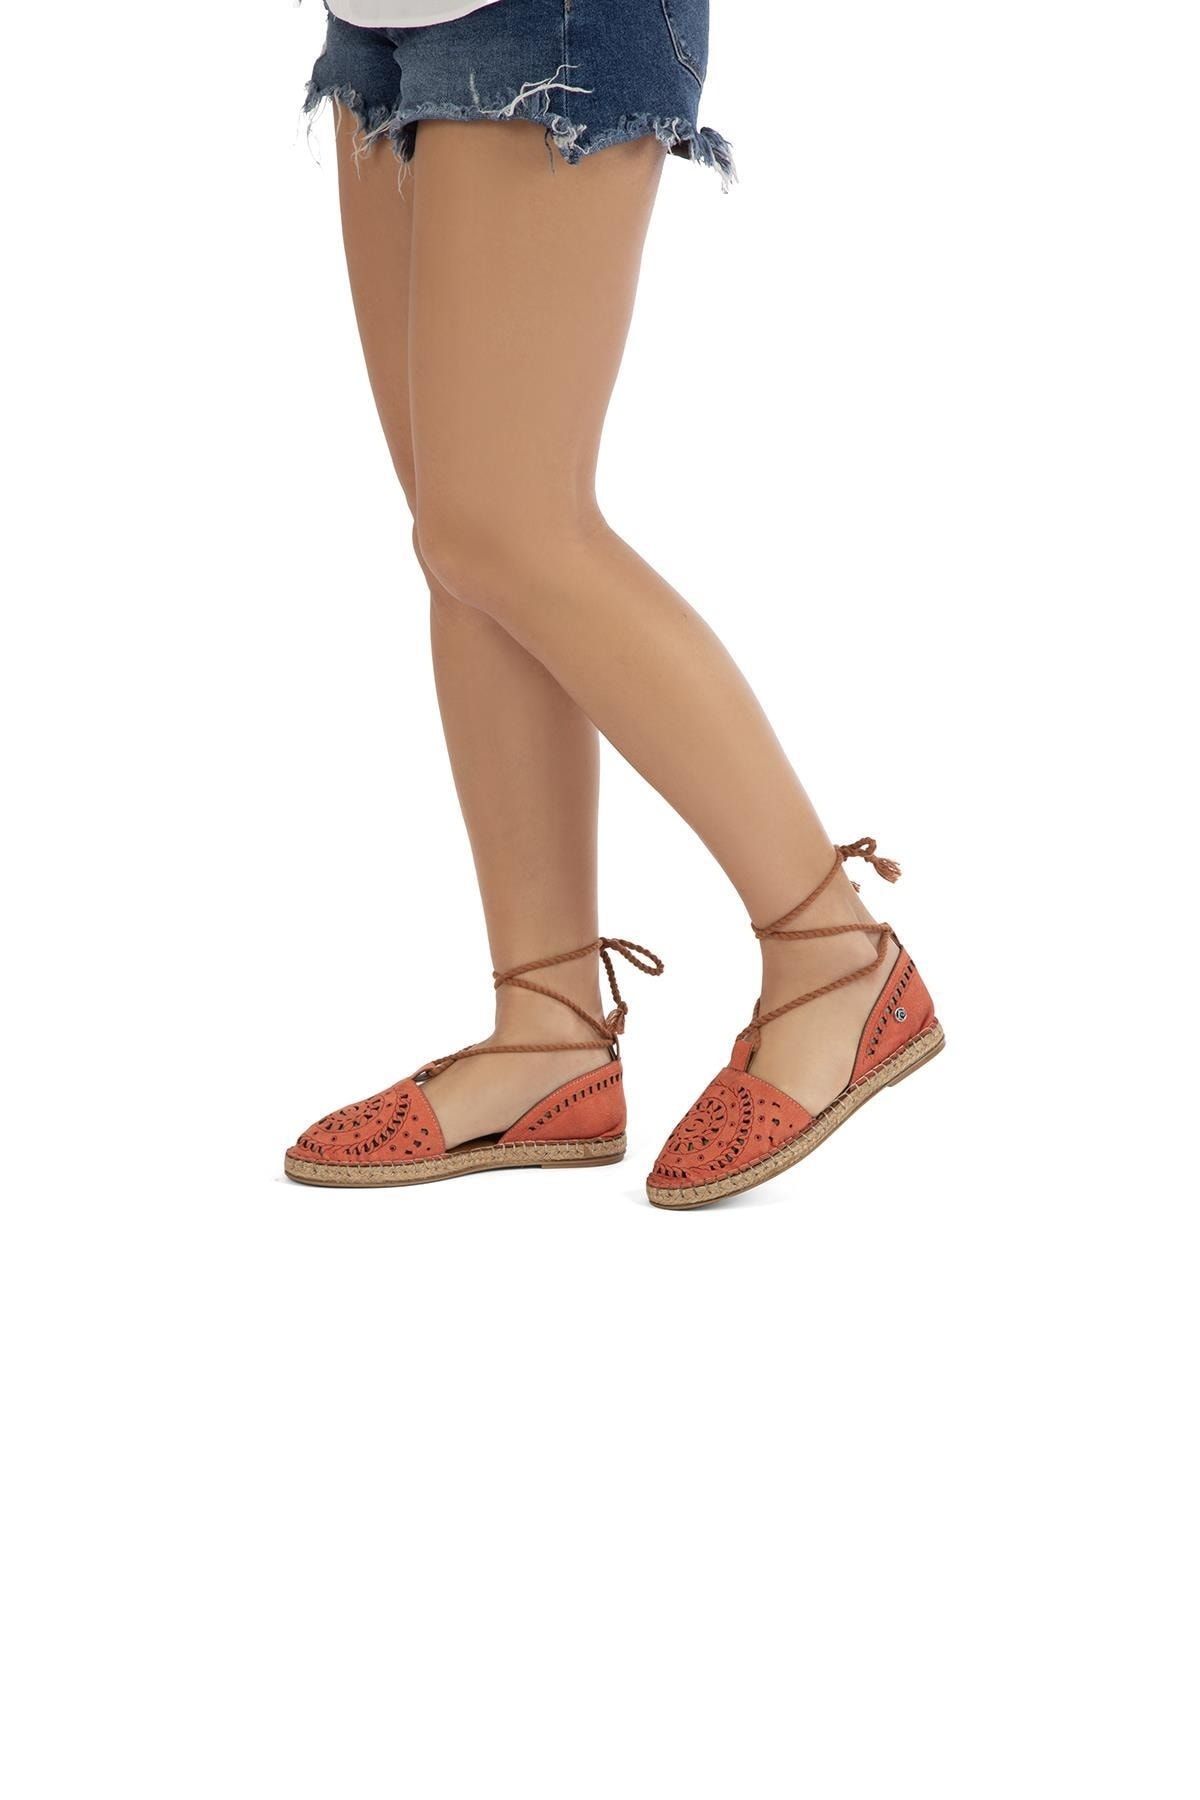 Pierre Cardin ® | Pc-52271-3592 Turuncu - Kadın Günlük Ayakkabı